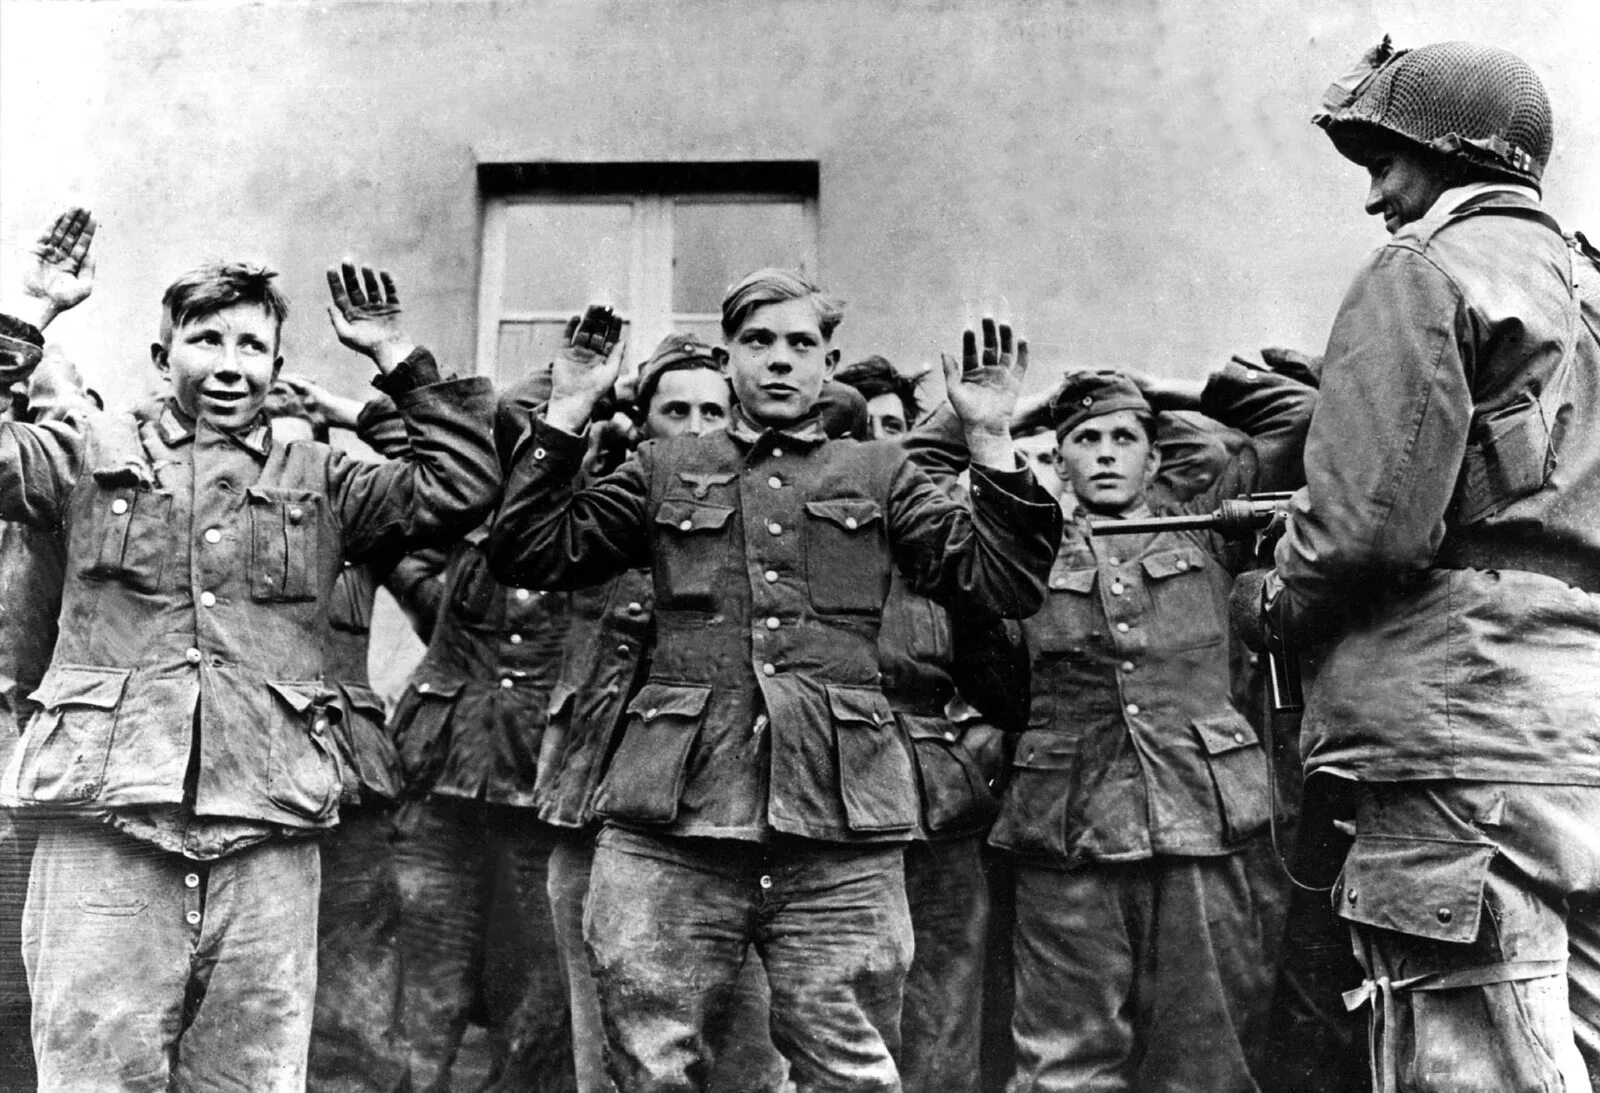 Гитлерюгенд в Берлине 1945 пленные. Дети и солдаты вермахта 1941. Немецкие солдаты сдаются в плен 1945. Немцы радуются